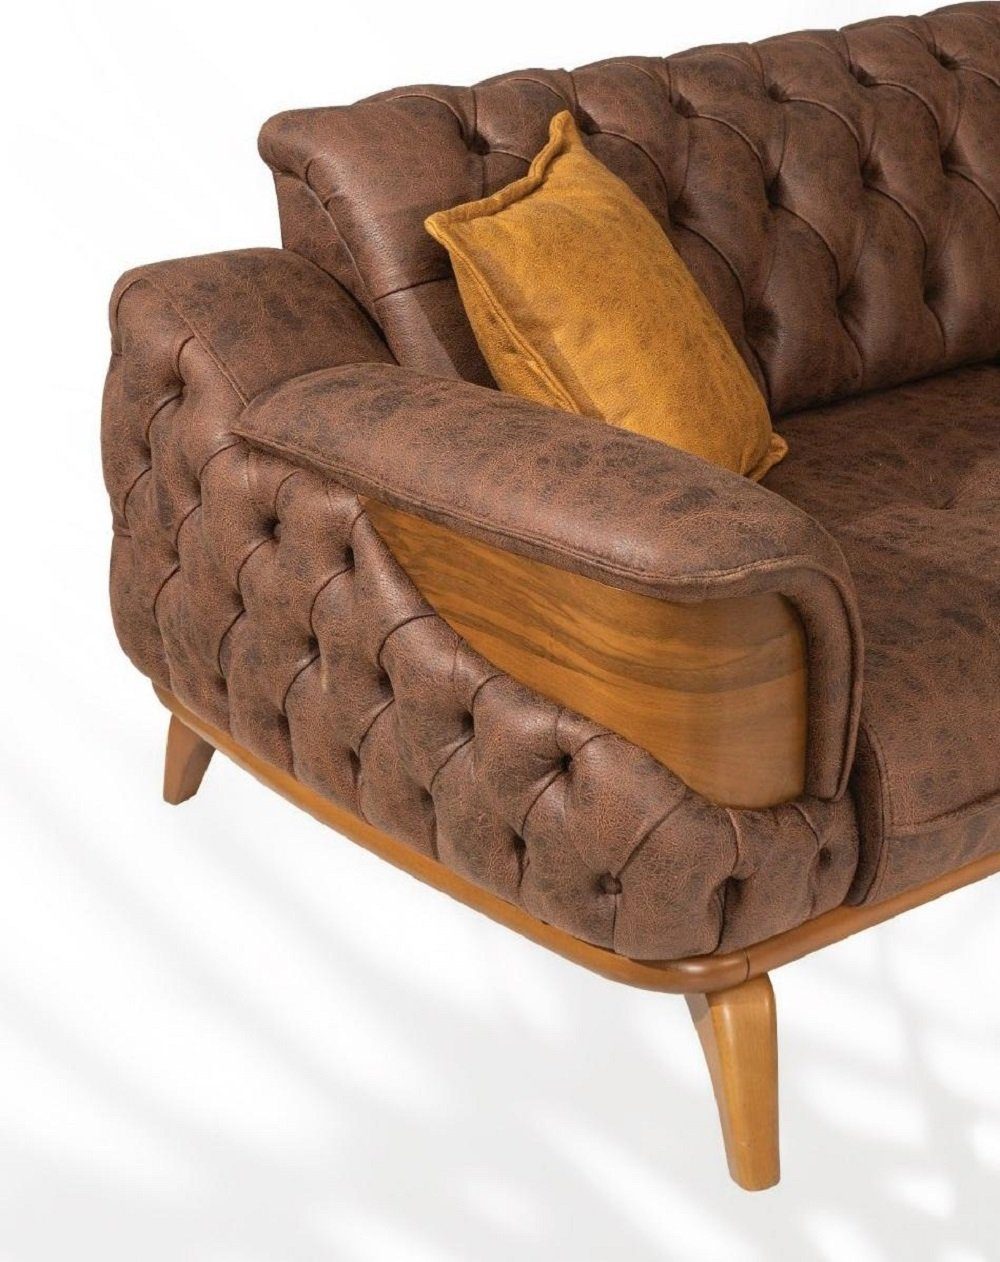 JVmoebel Dreisitzer Sofas Made Sofa Polster Luxus Leder in Couch Braun Neu, Europe Chesterfield